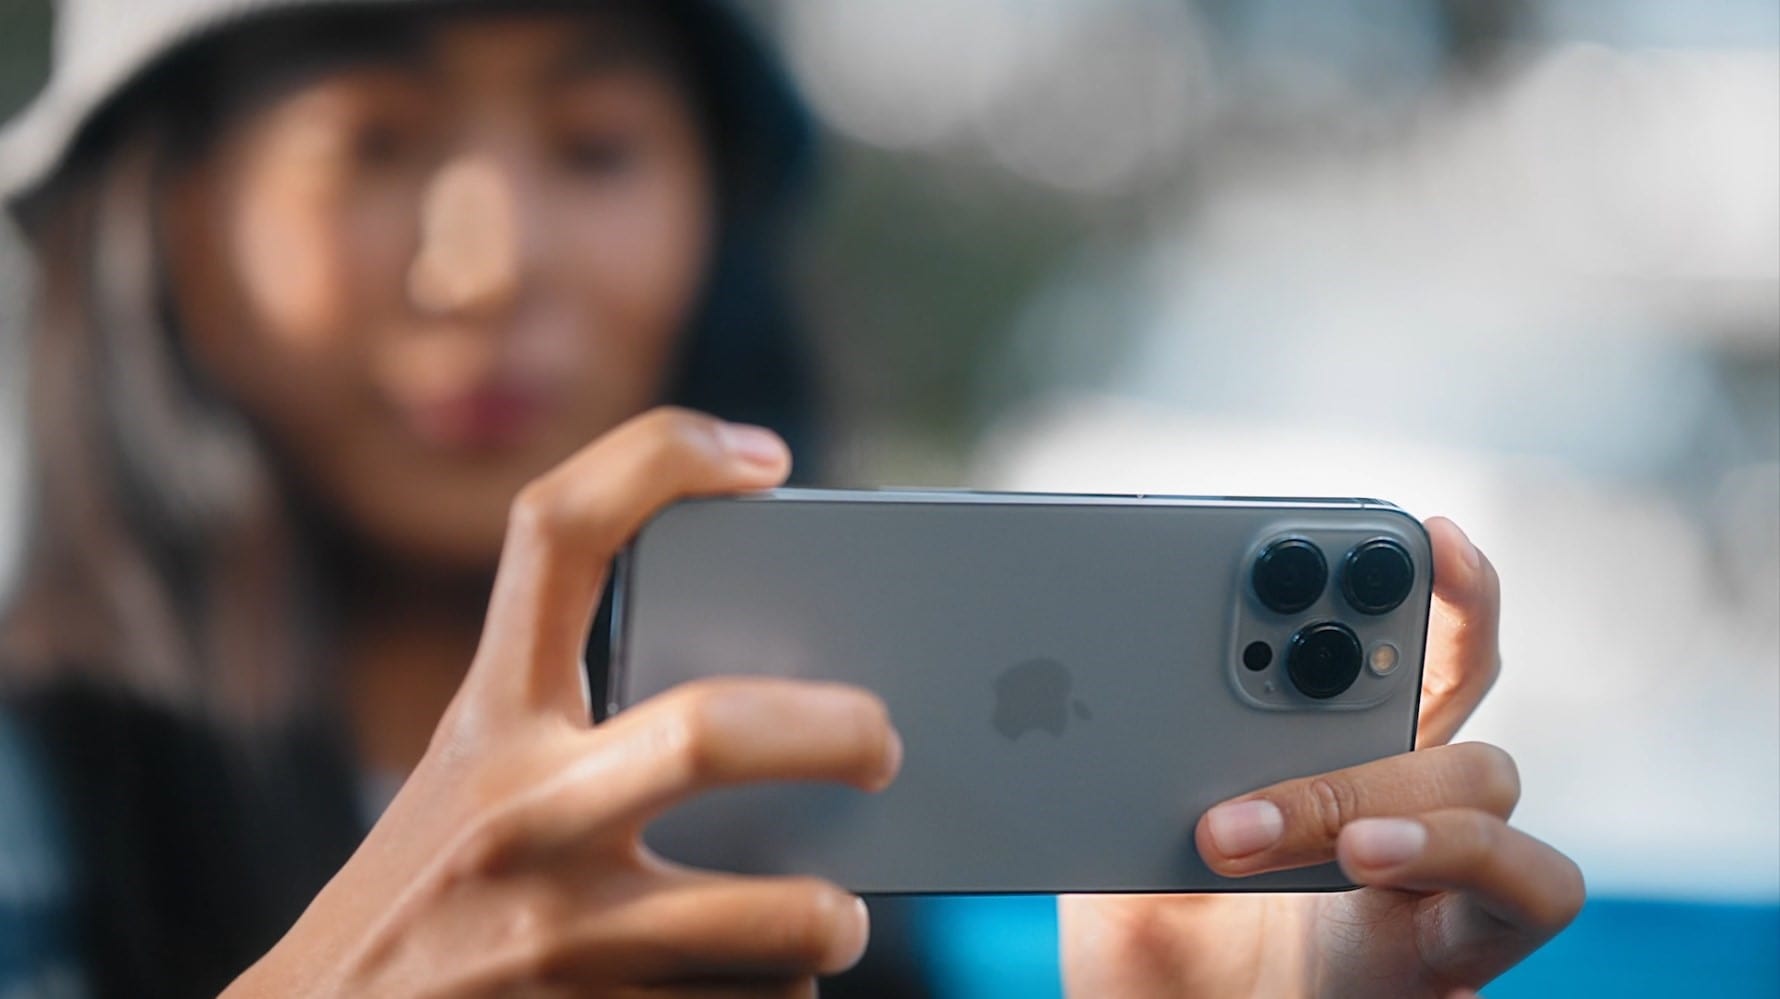 Kein Fehler, sondern eine Funktion: Apple verspricht, den Makromodus auf iPhone 13 Pro-Smartphones zu beheben